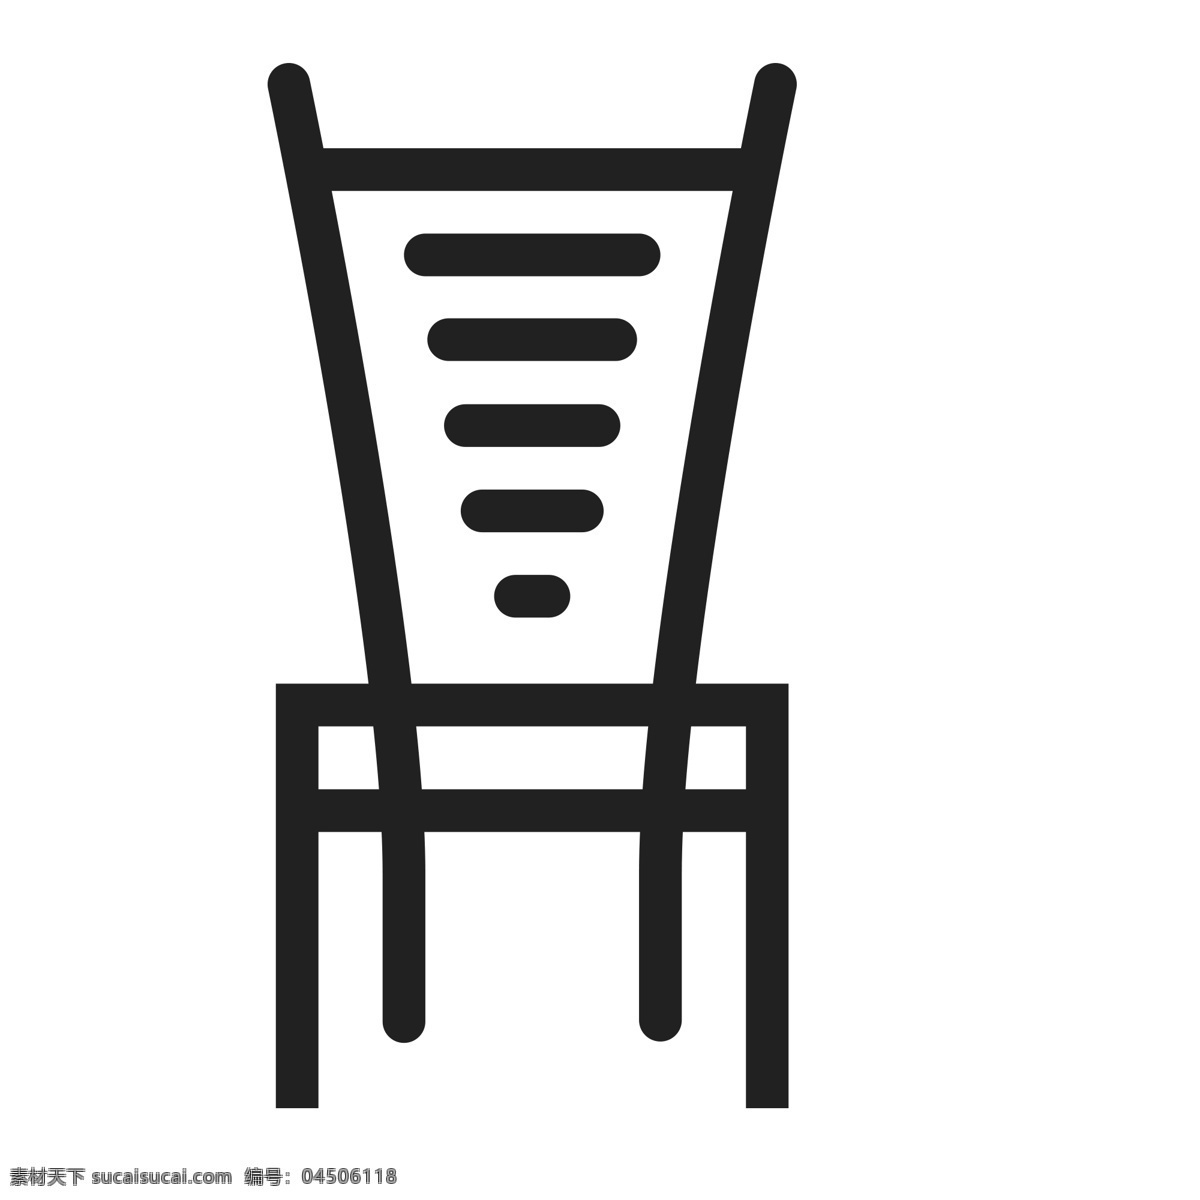 扁平化椅子 座椅 椅子 扁平化ui ui图标 手机图标 界面ui 网页ui h5图标